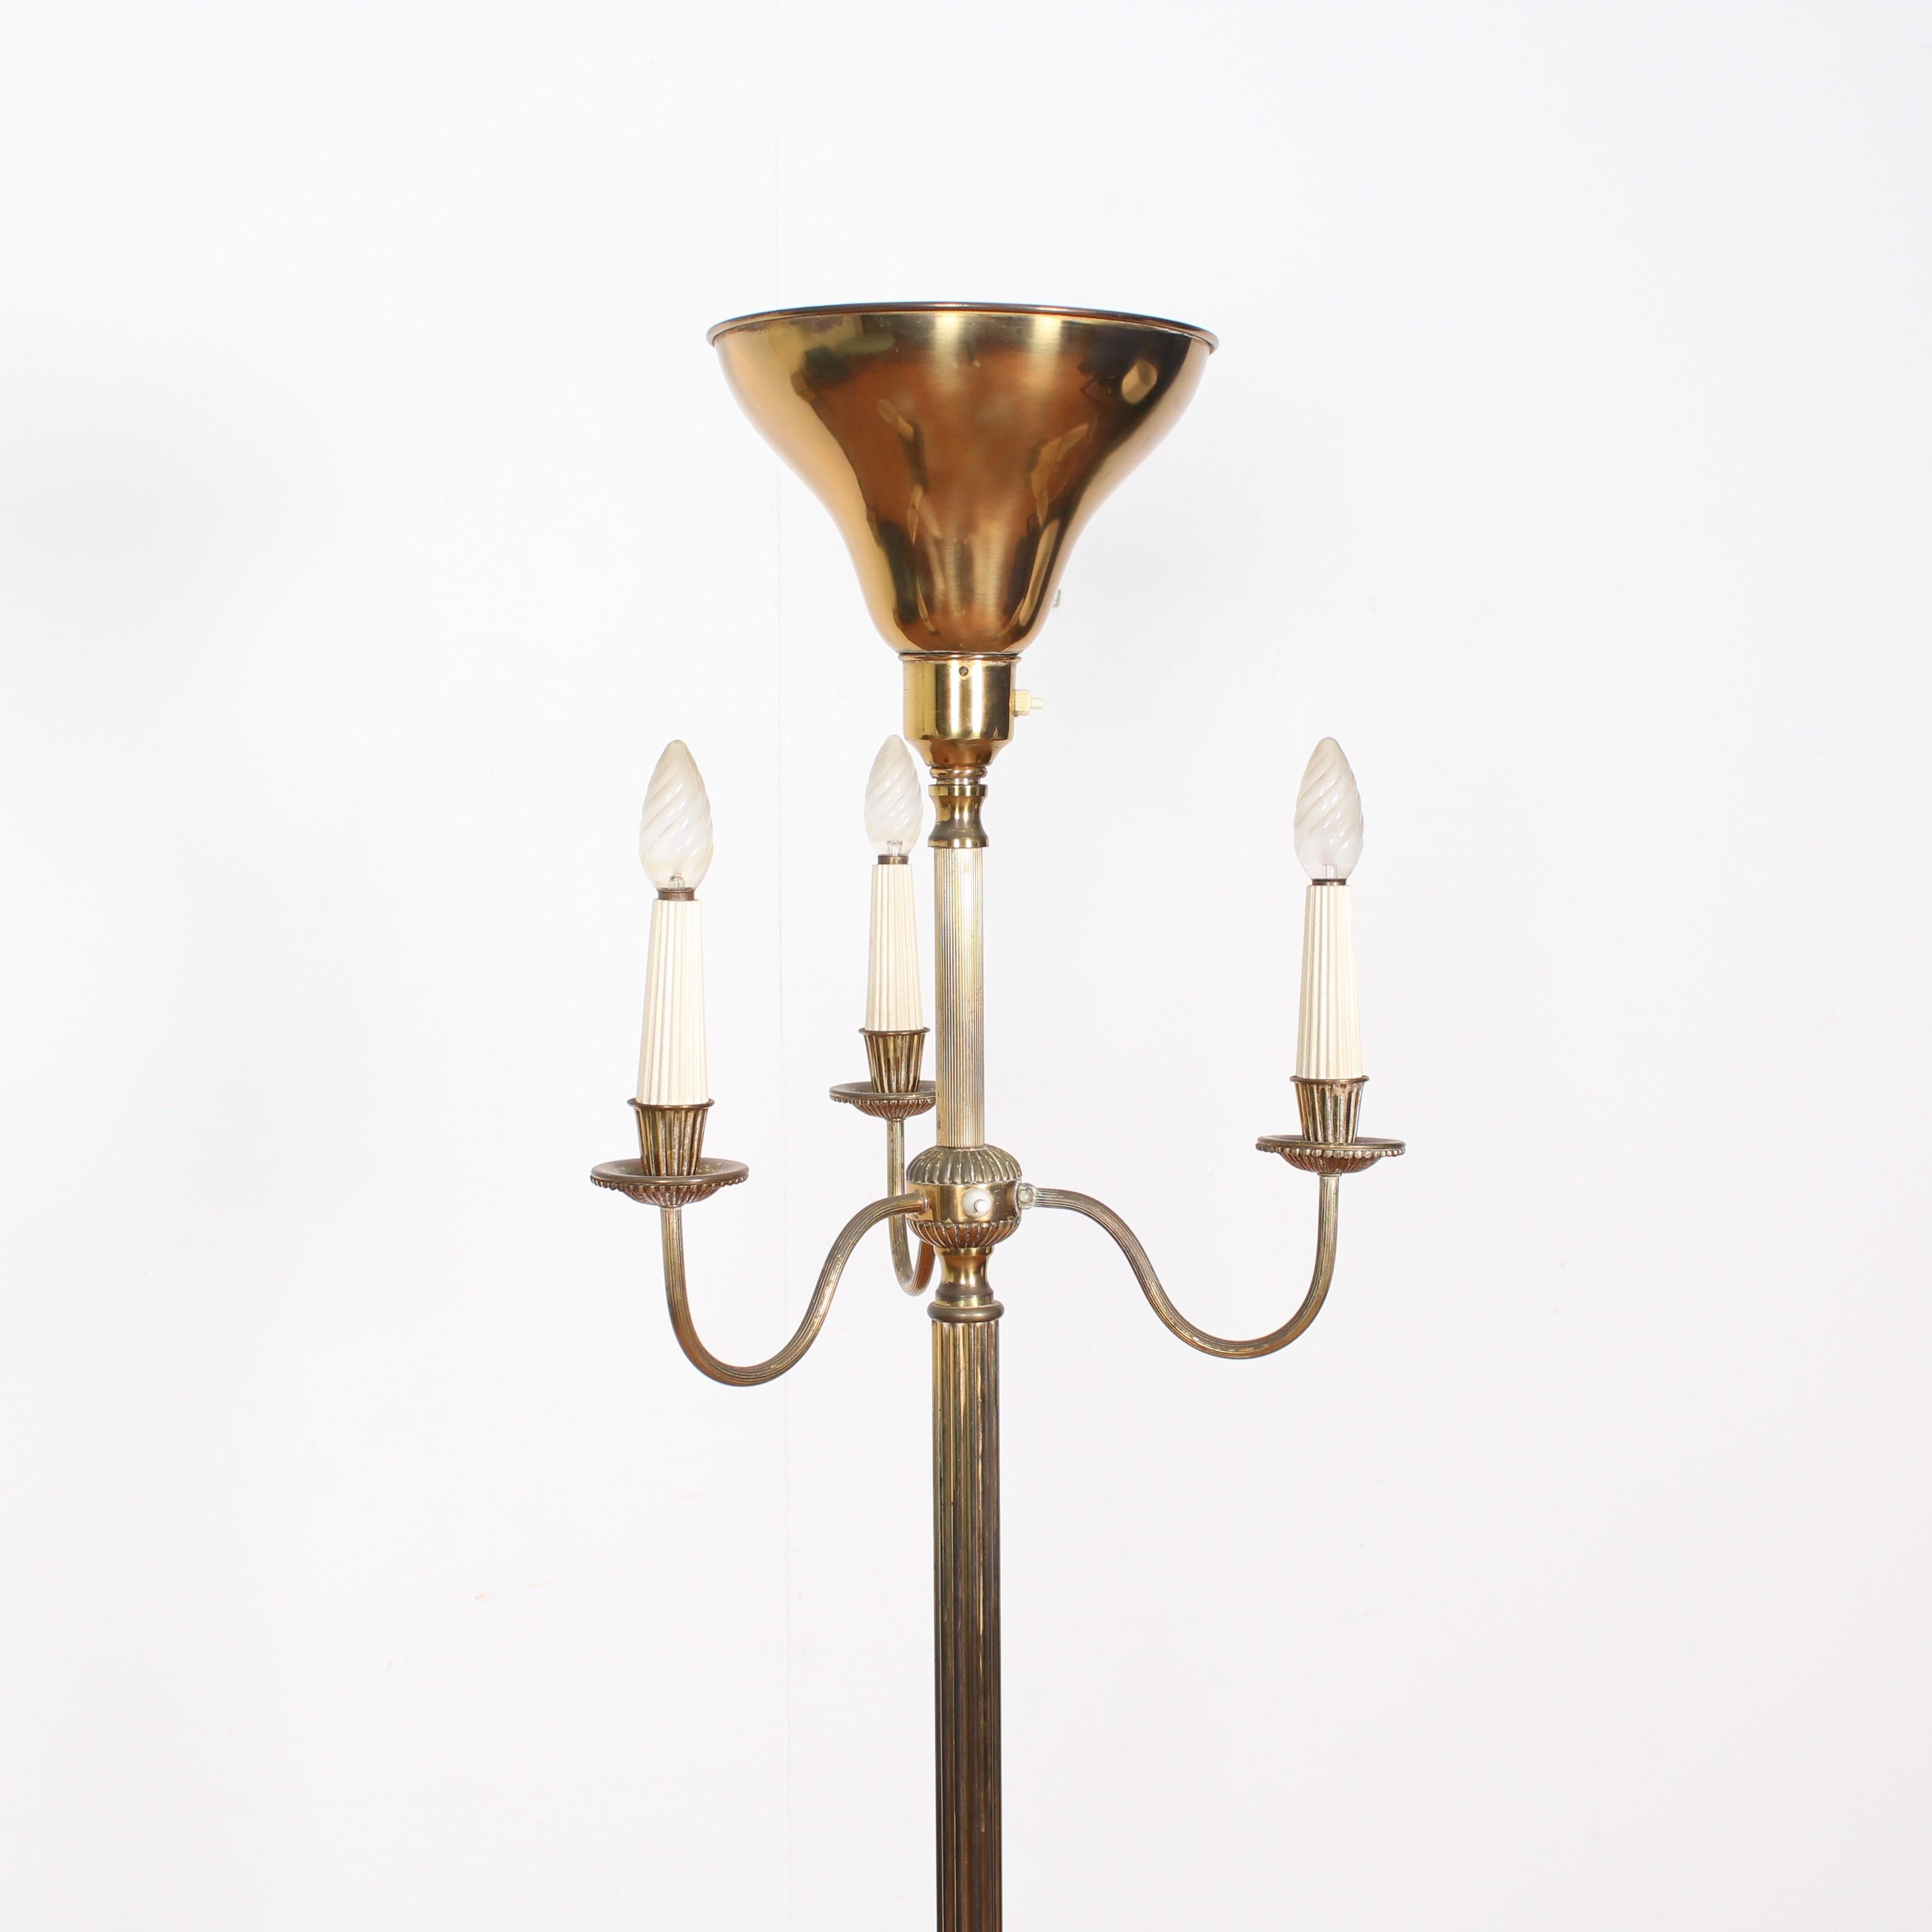 Mid-20th Century Midcentury Brass Floor Lamp Stilnovo Style Production Italy 1950s 